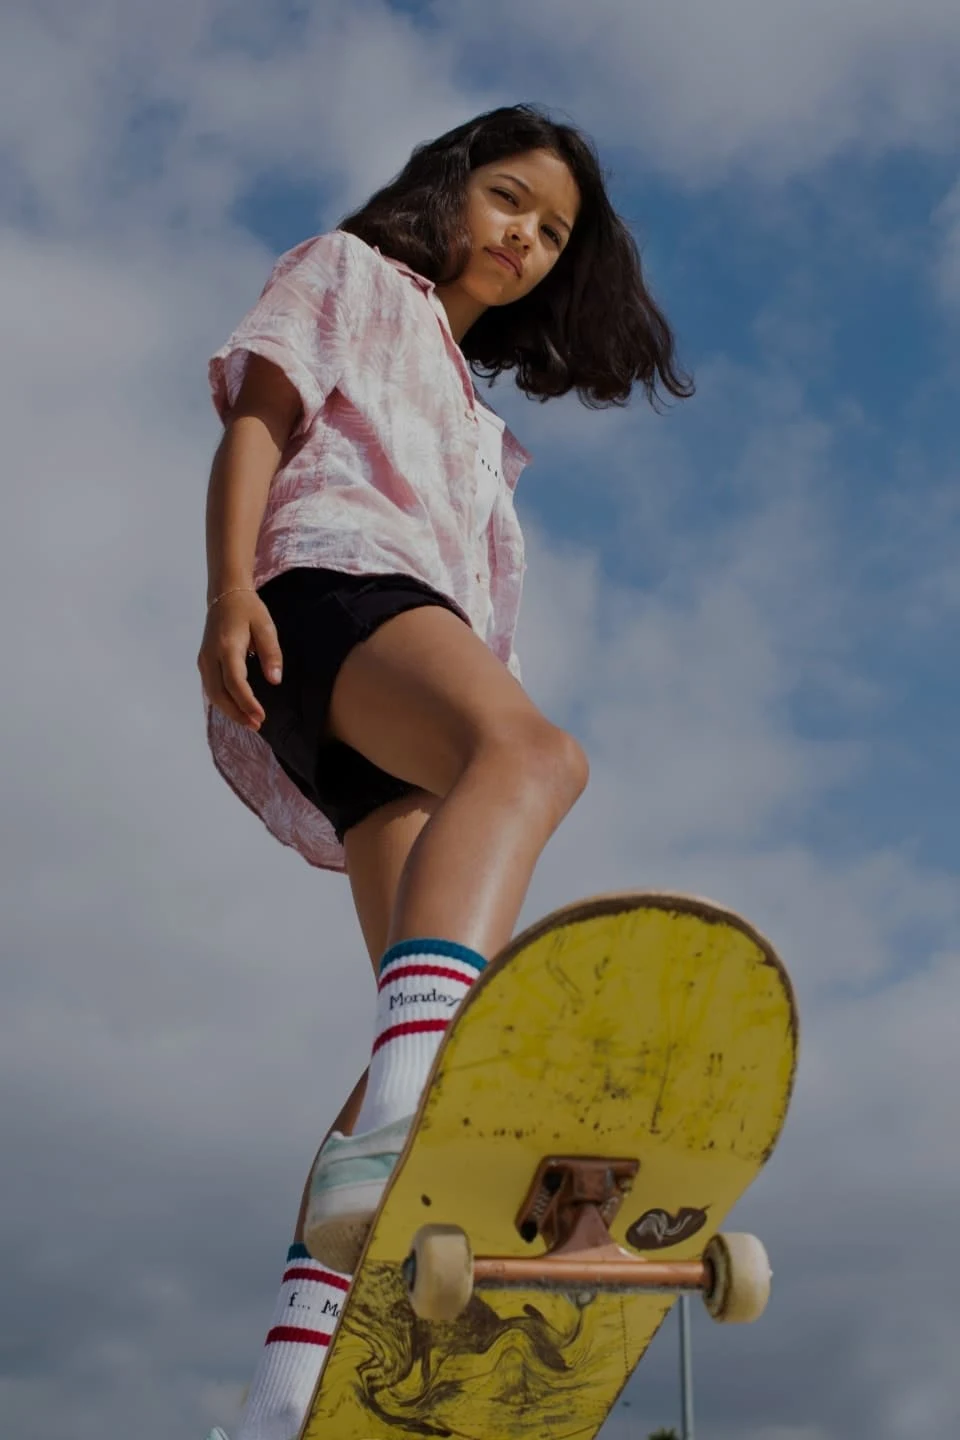 Ein Teenagermädchen mit braunem Haar, das auf einem gelben Skateboard fährt